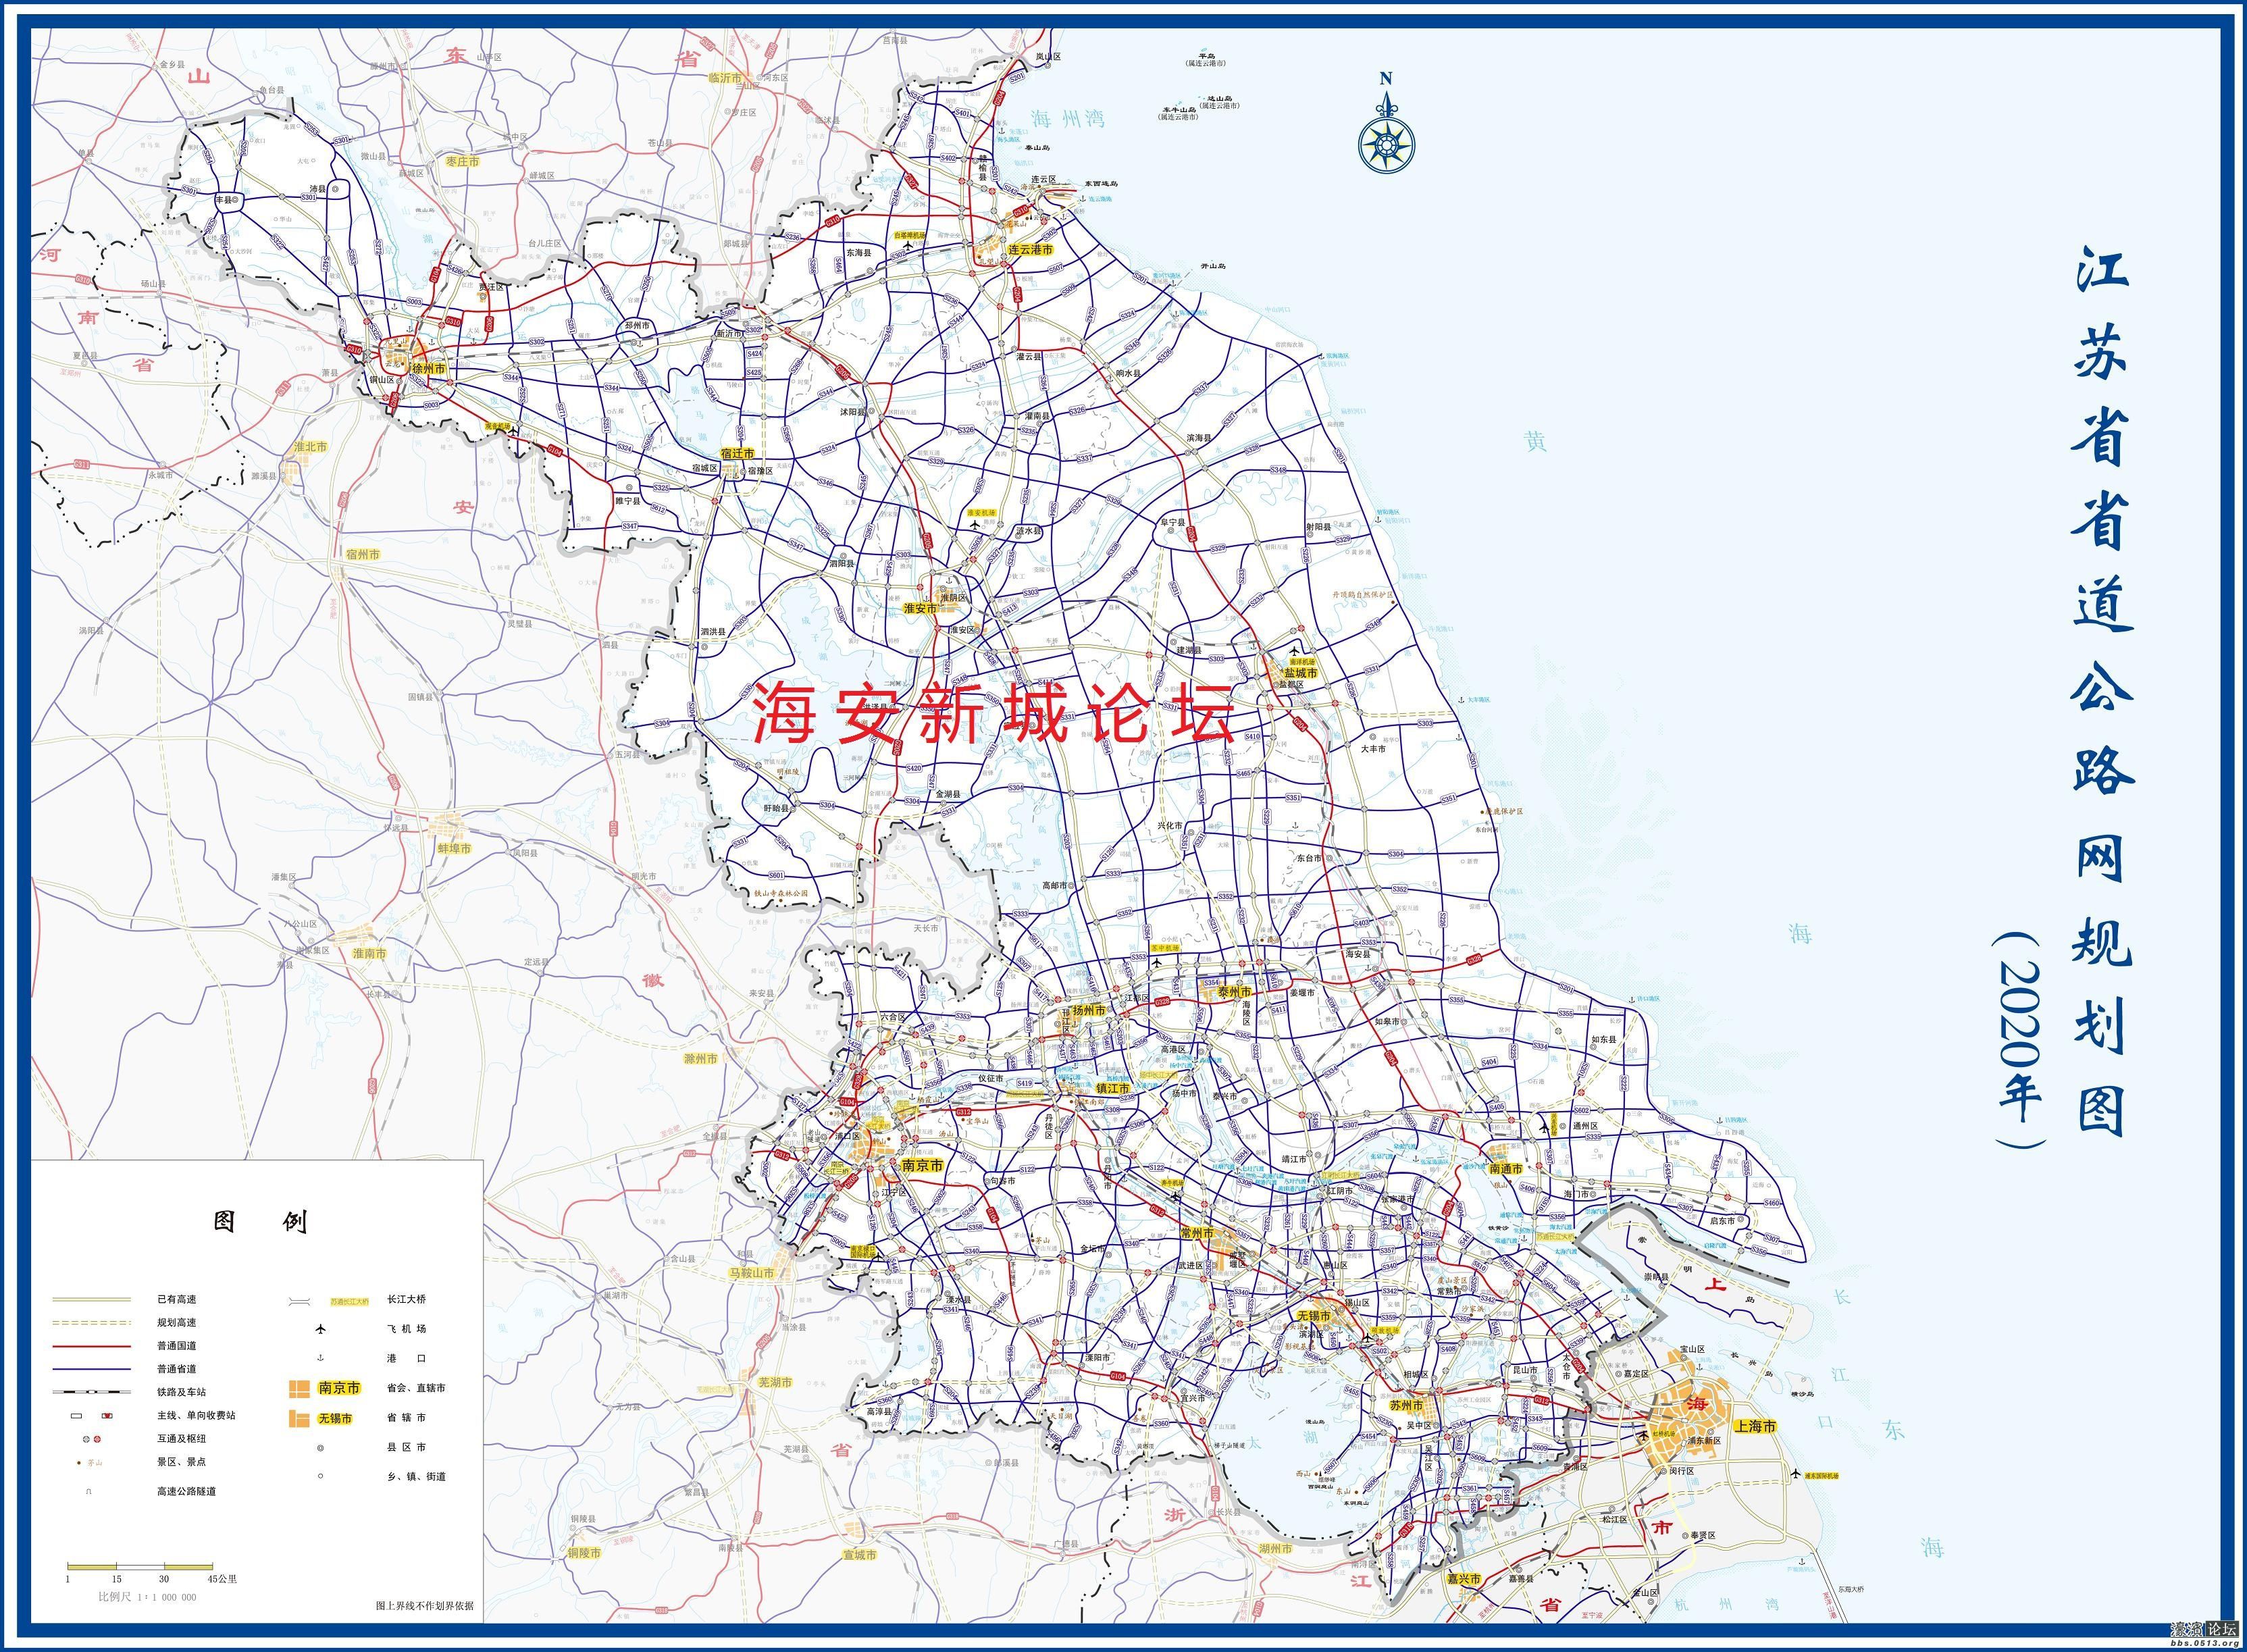 江苏省省道公路网规划图(2020年)海安s353,s403,s226